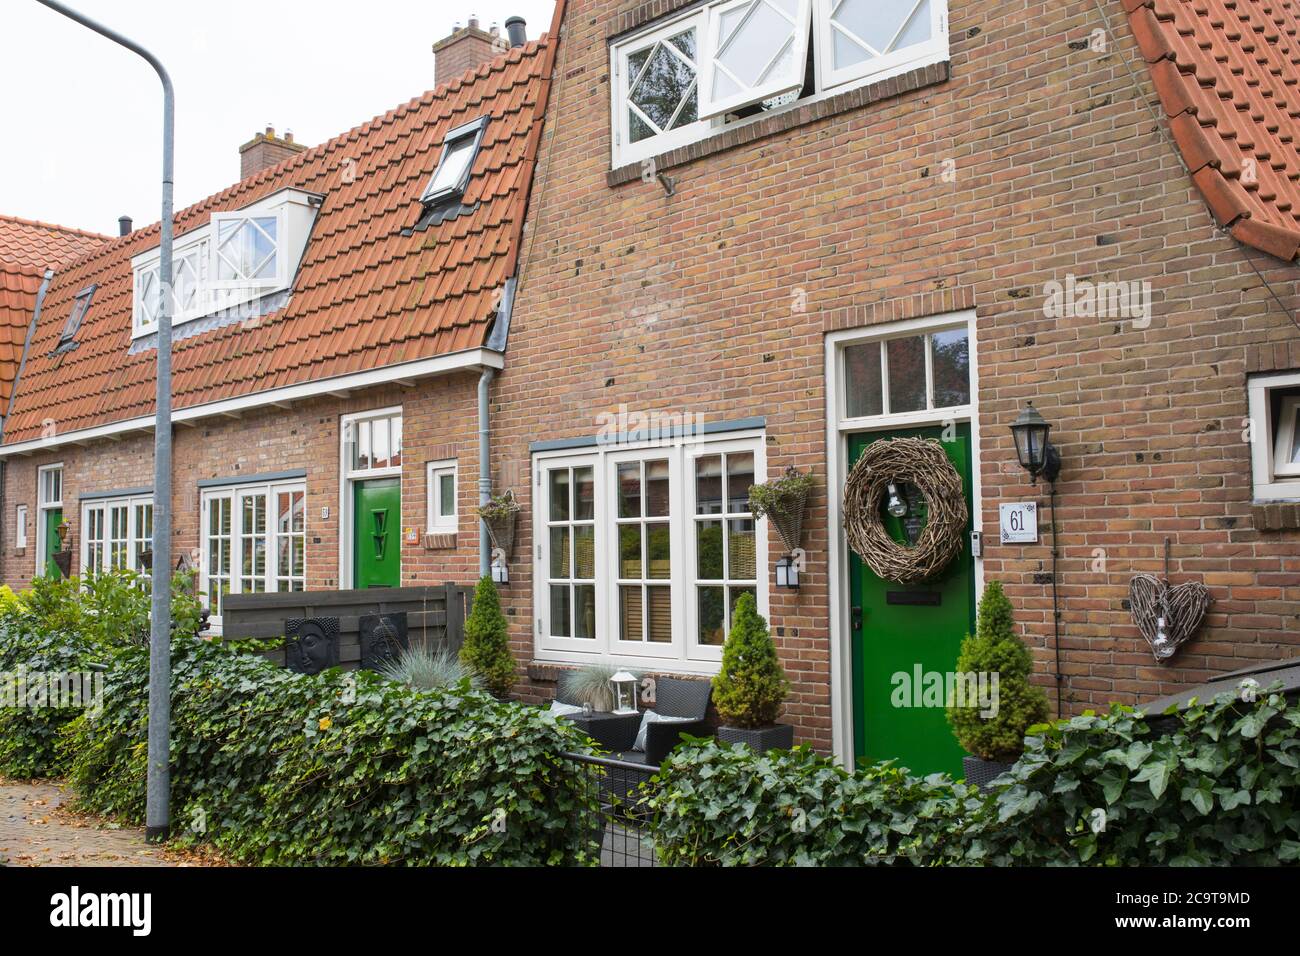 Vivienda social para clase obrera desarrollada por el arquitecto Willem Marinus Dudok a principios del siglo XX en Hilversum, países Bajos Foto de stock